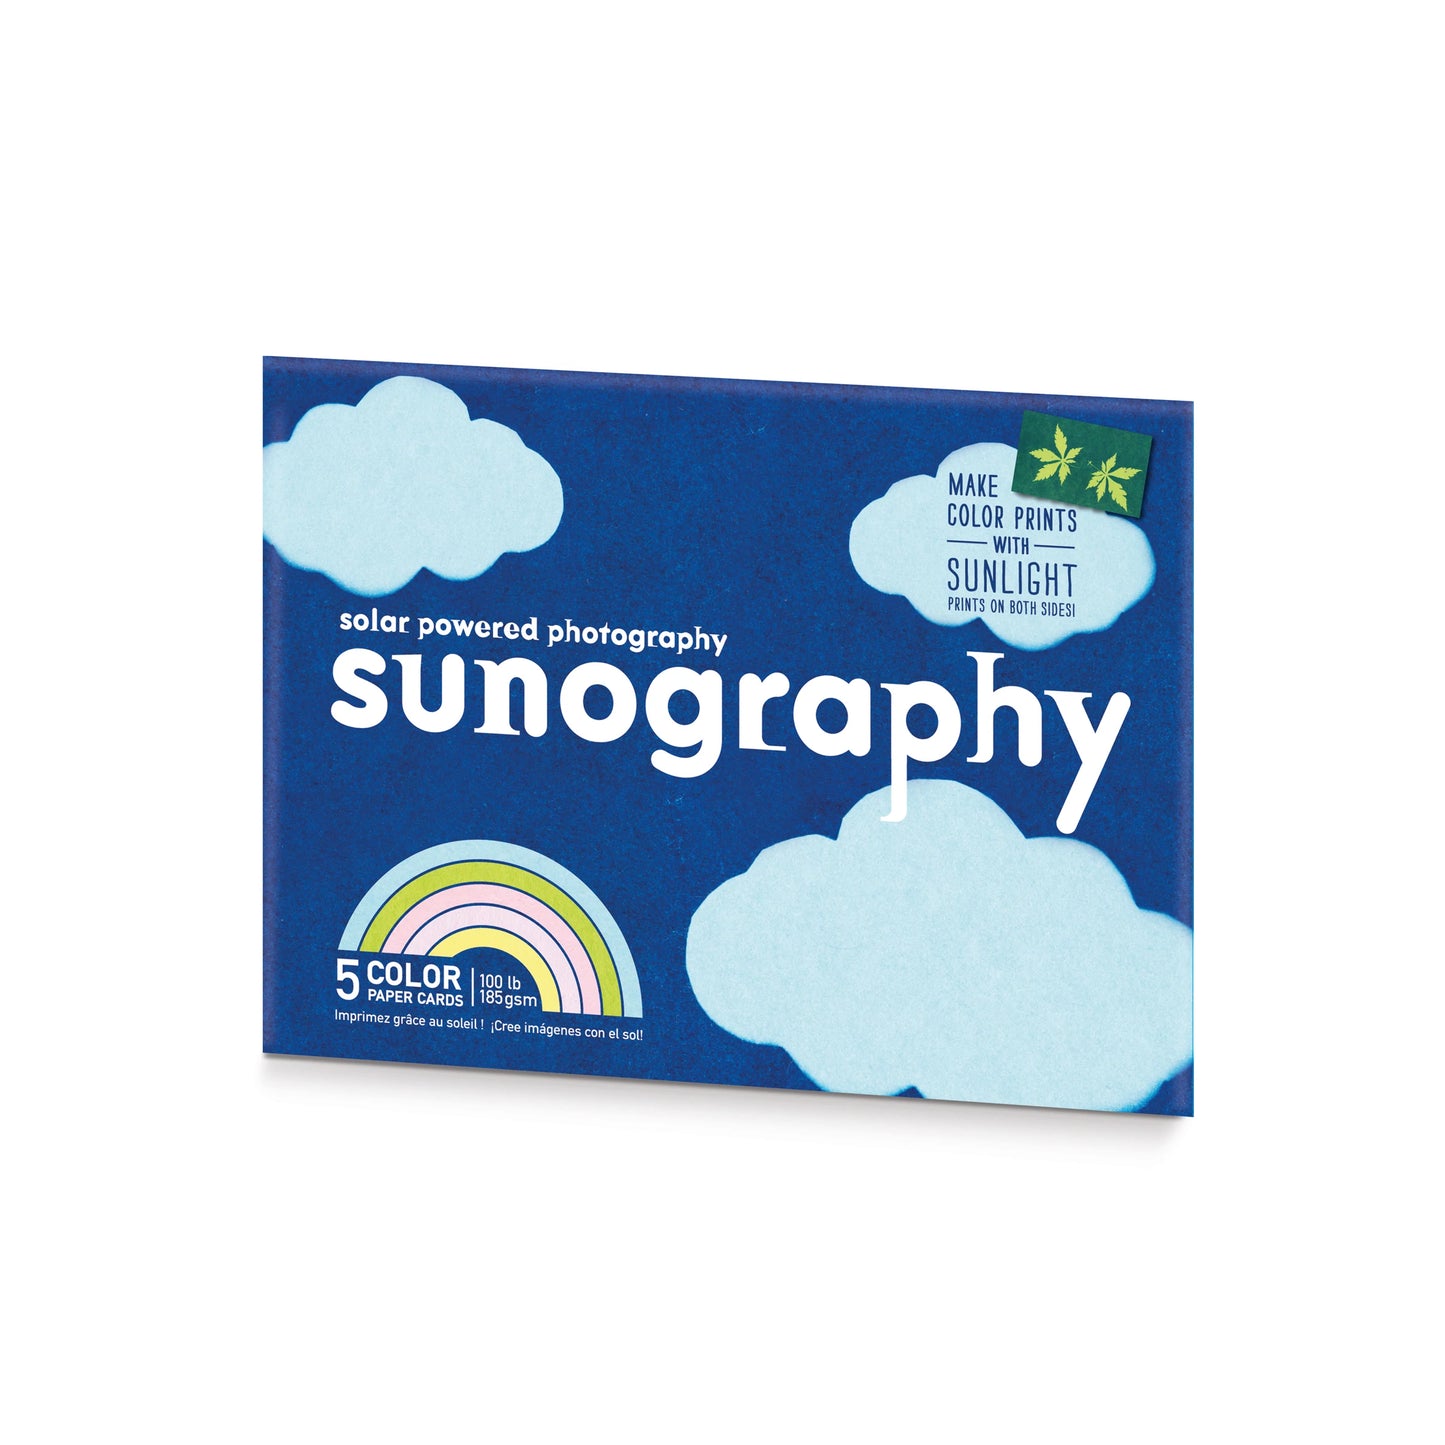 Sunography